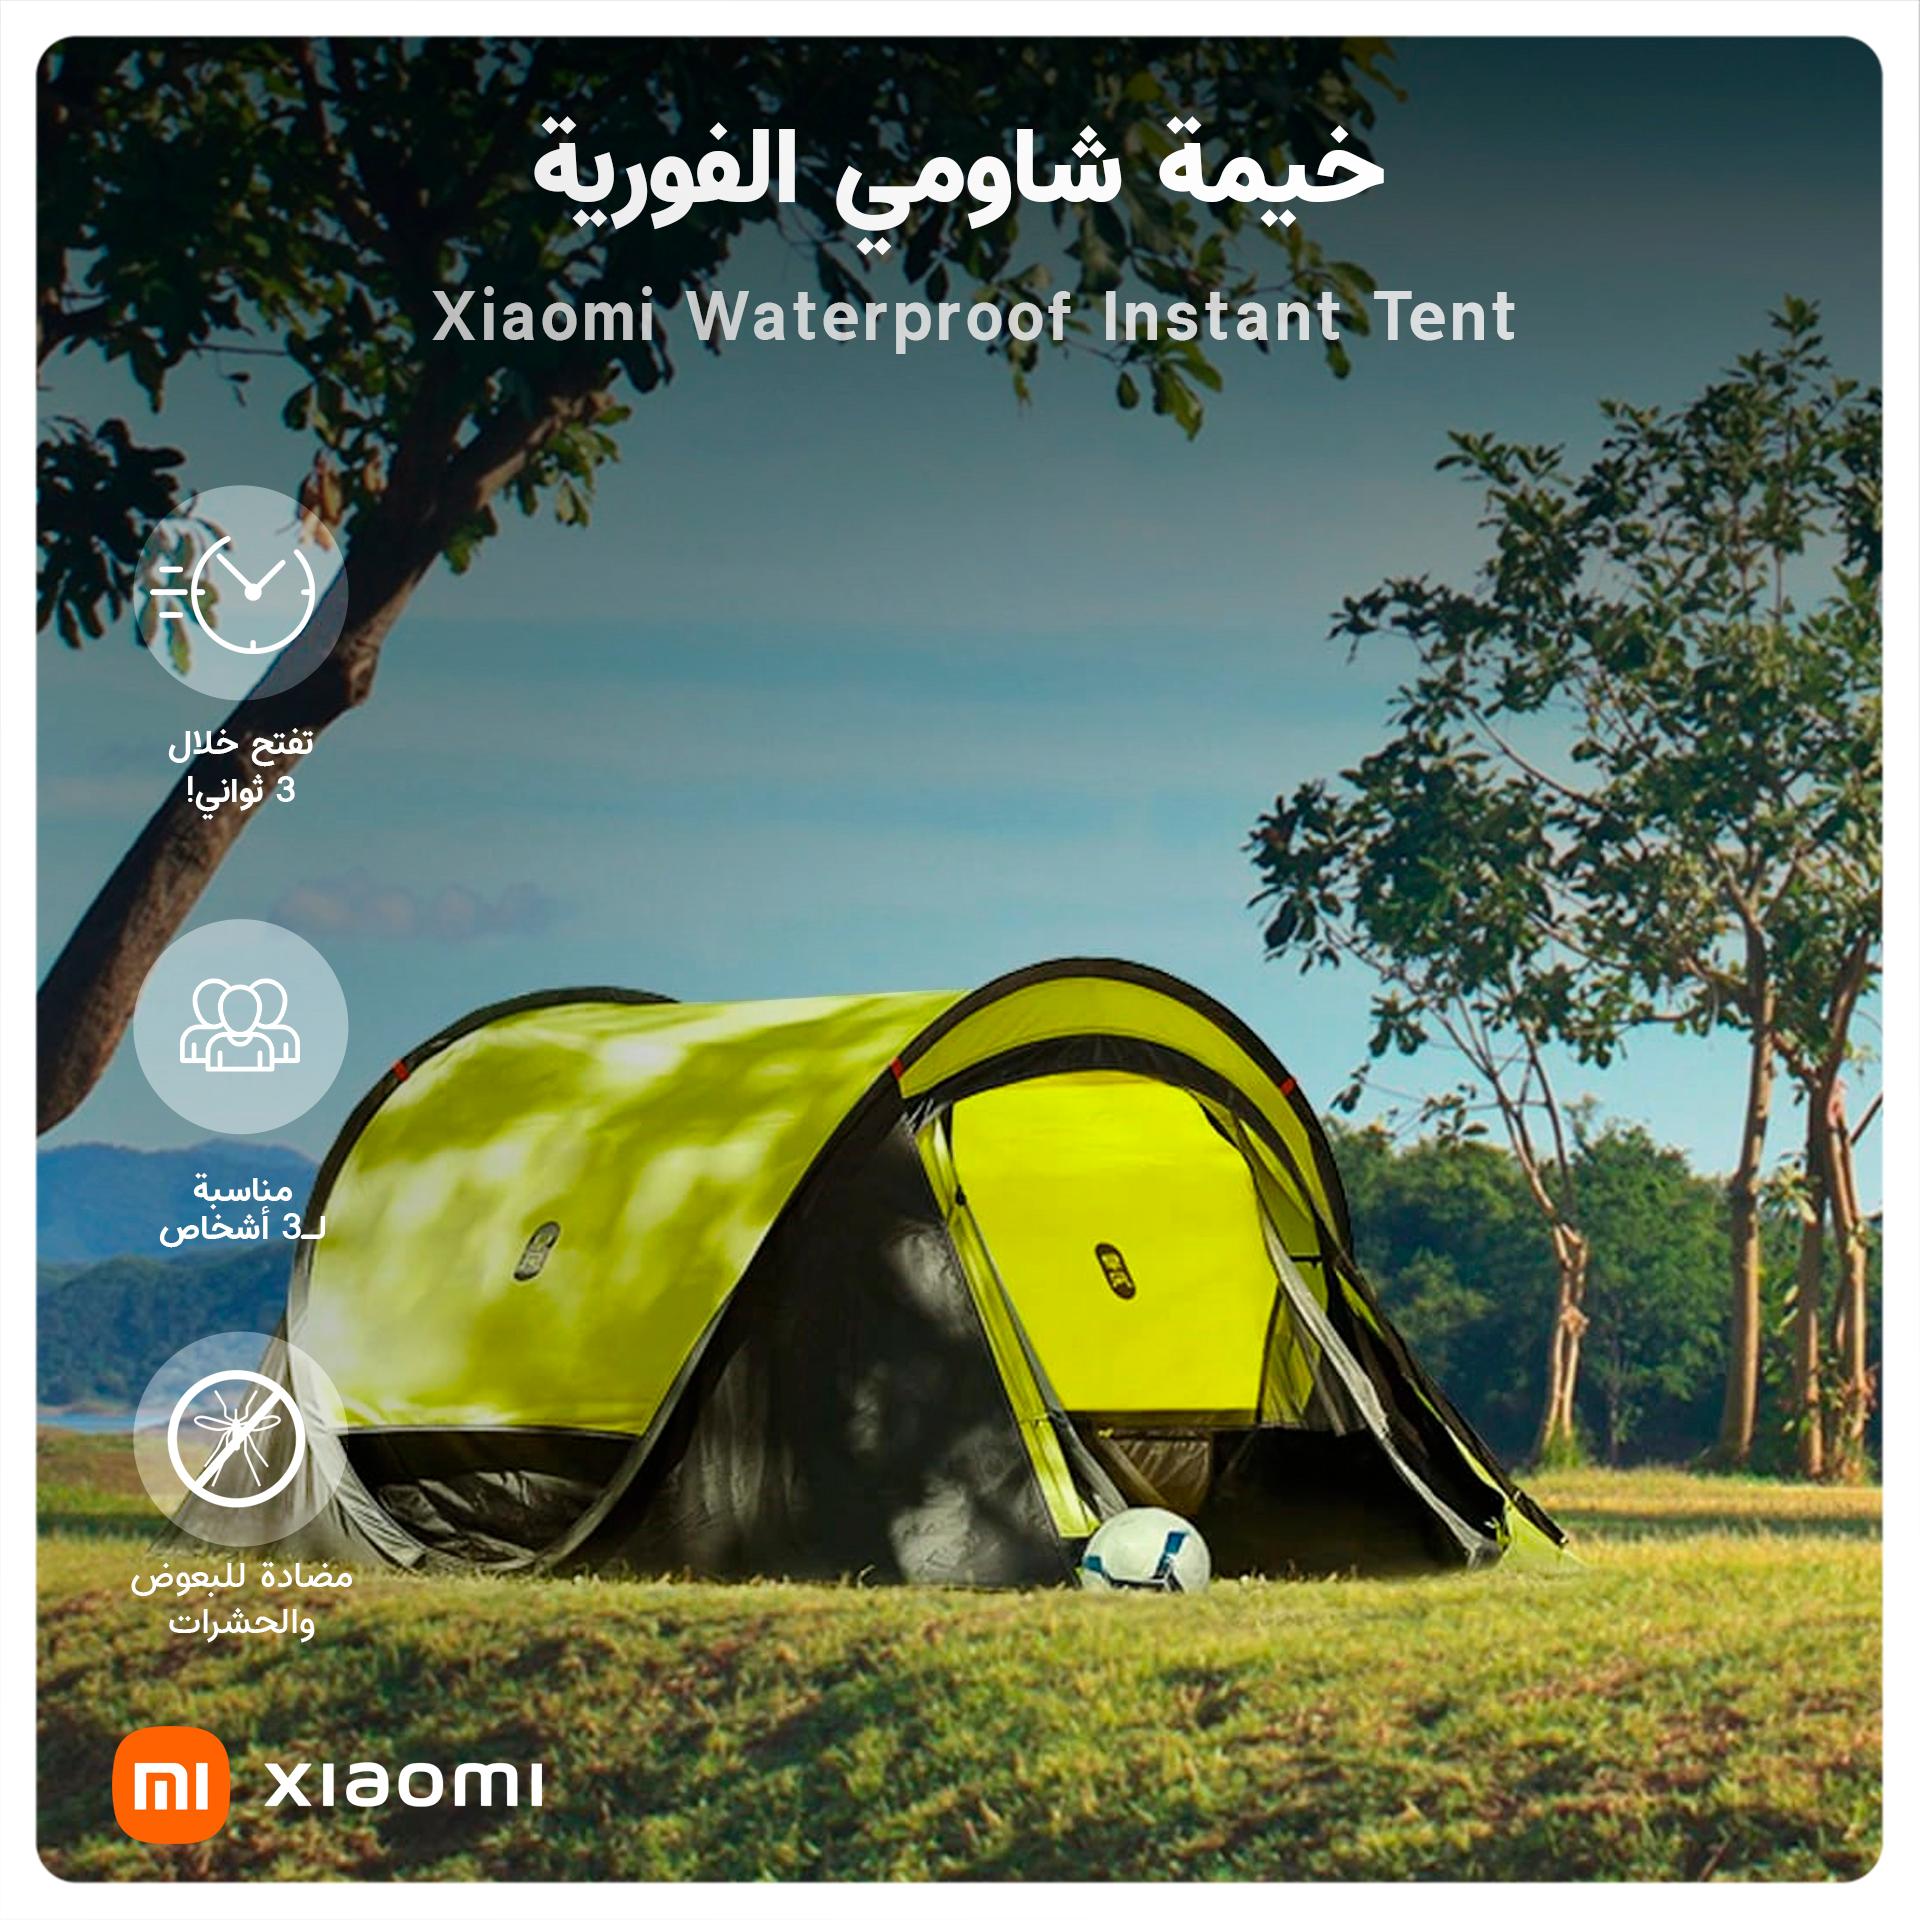 خيمة شاومي الفورية - Xiaomi Waterproof Instant Tent